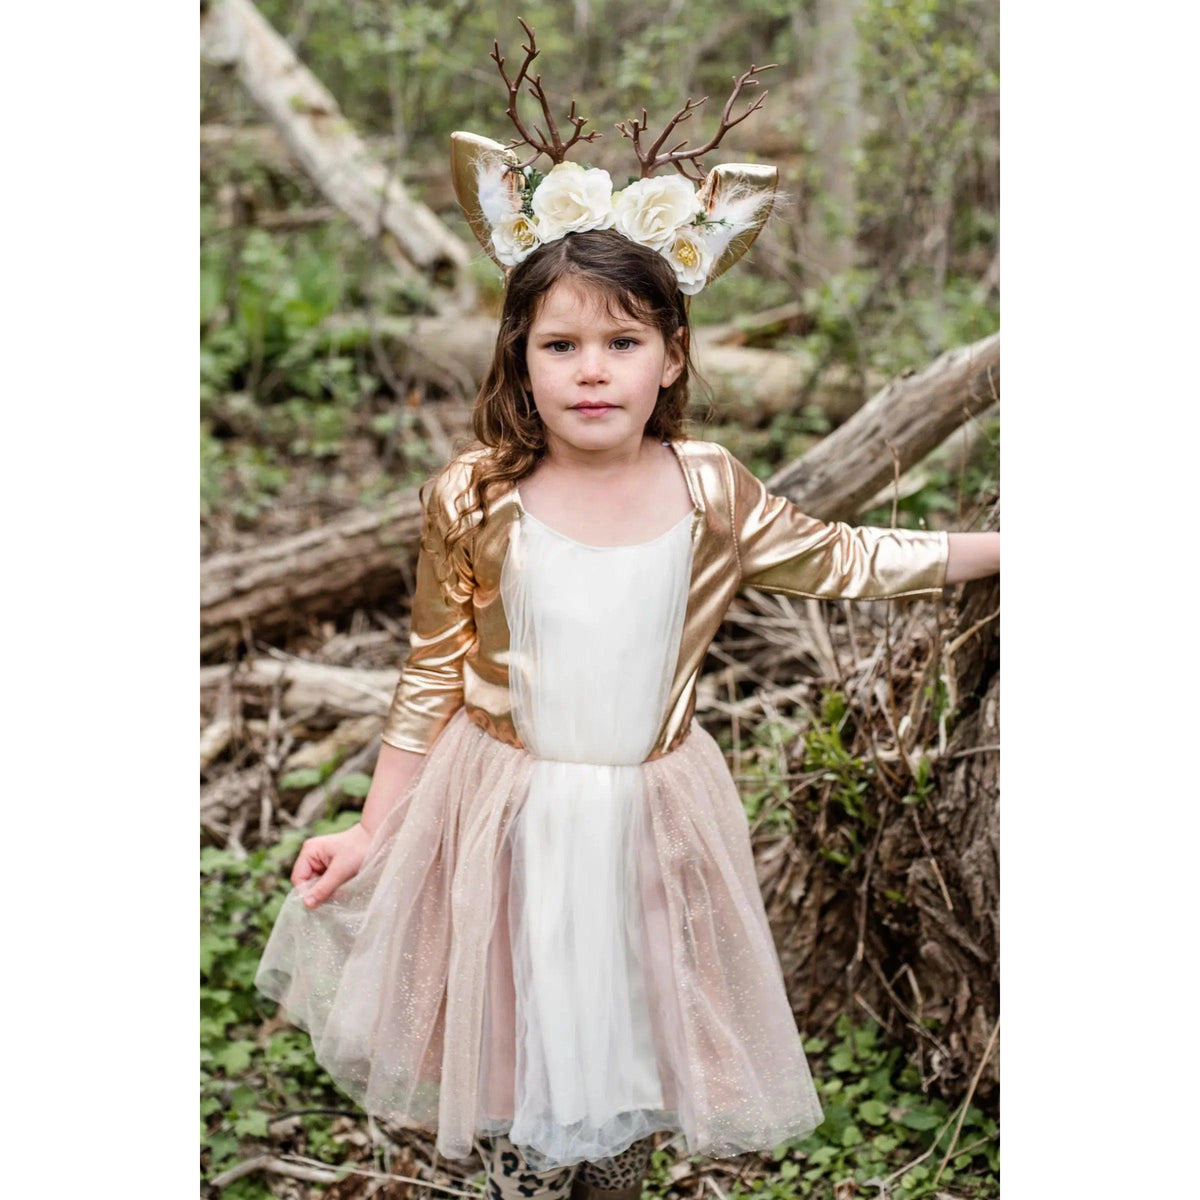 Girl standing in woods, wearing deer costume.